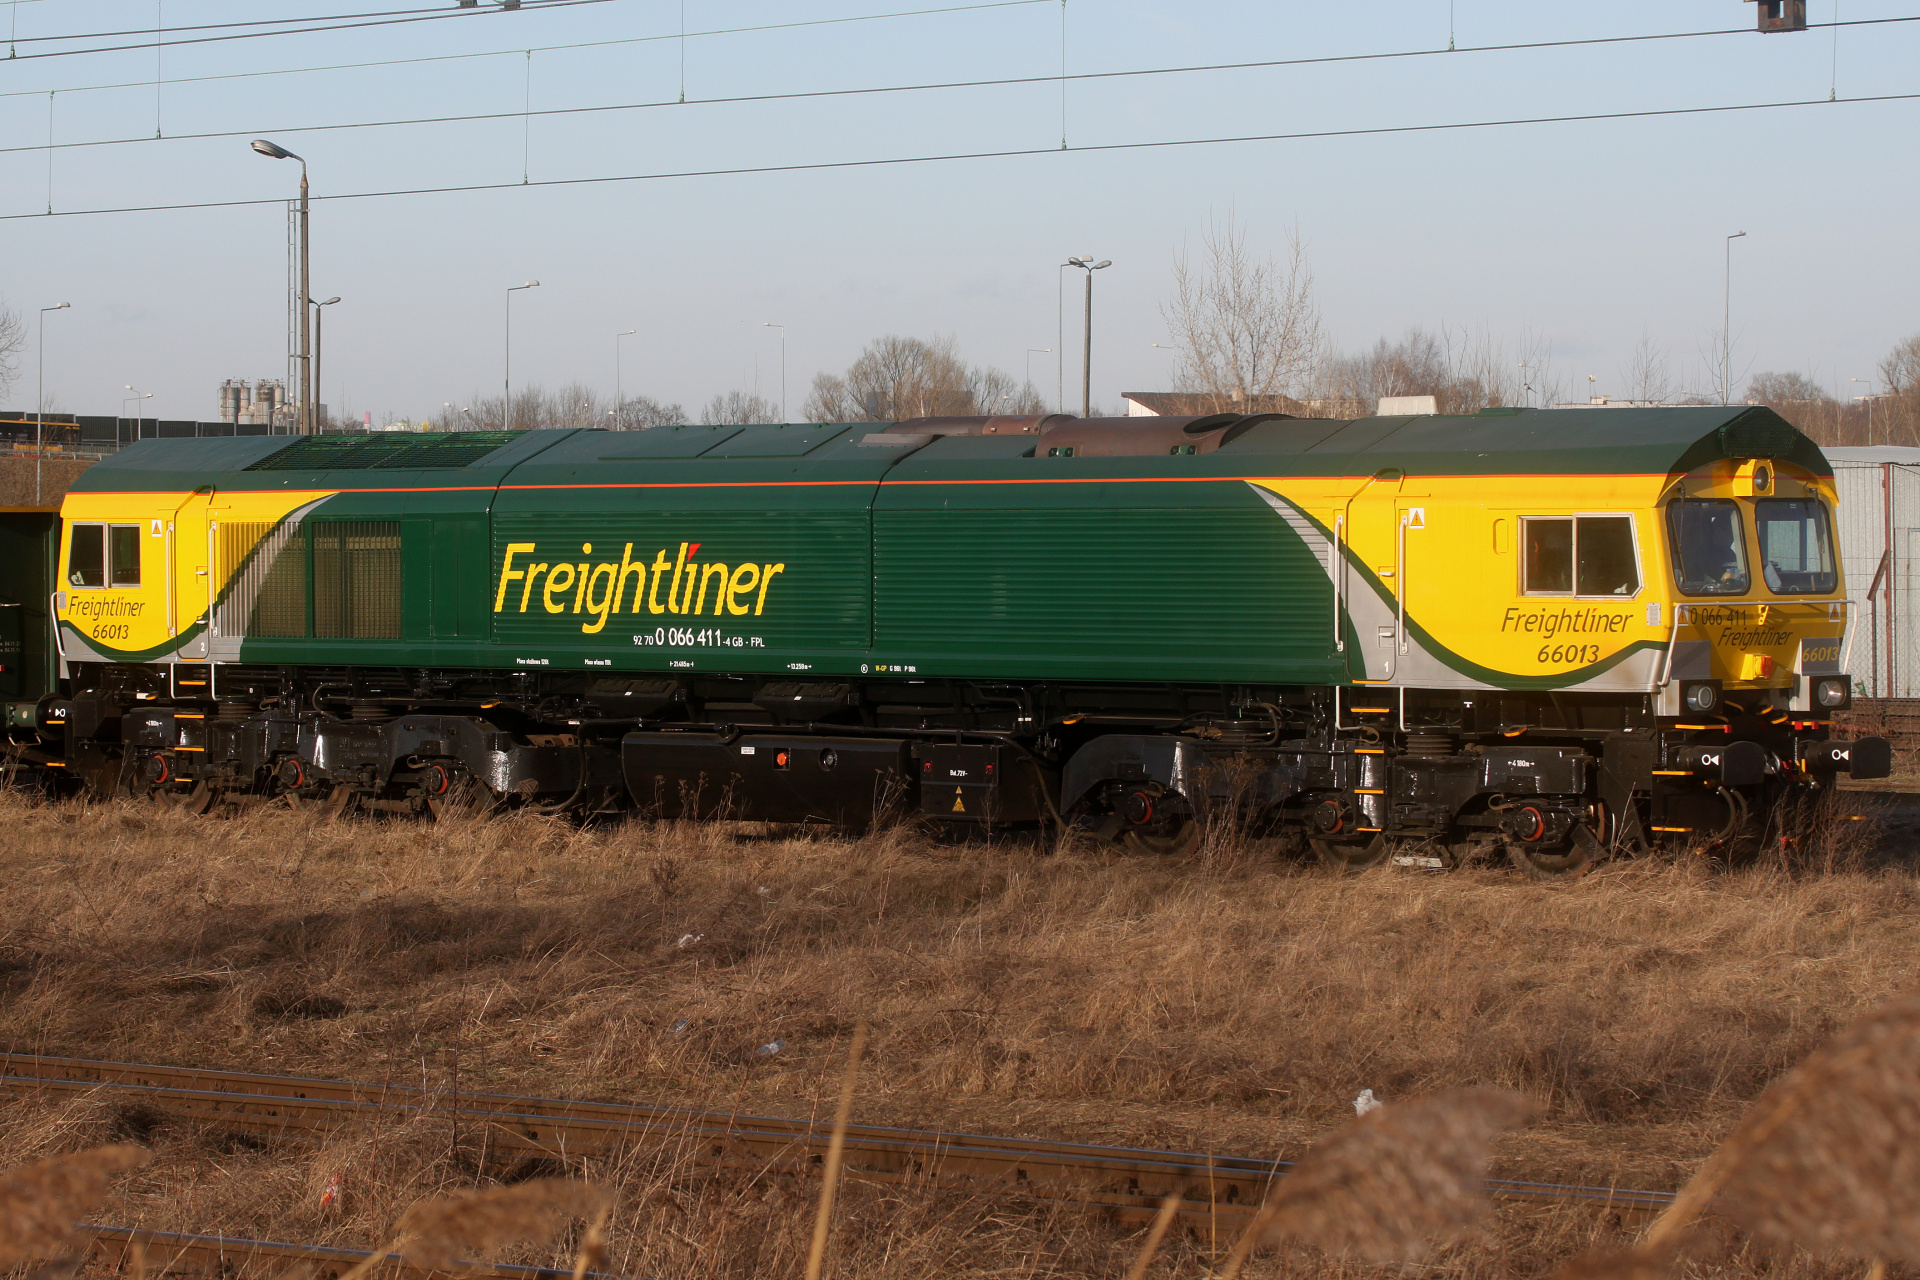 JT42CWRM 66013 (Pojazdy » Pociągi i lokomotywy » EMD JT42CWR (Class 66))